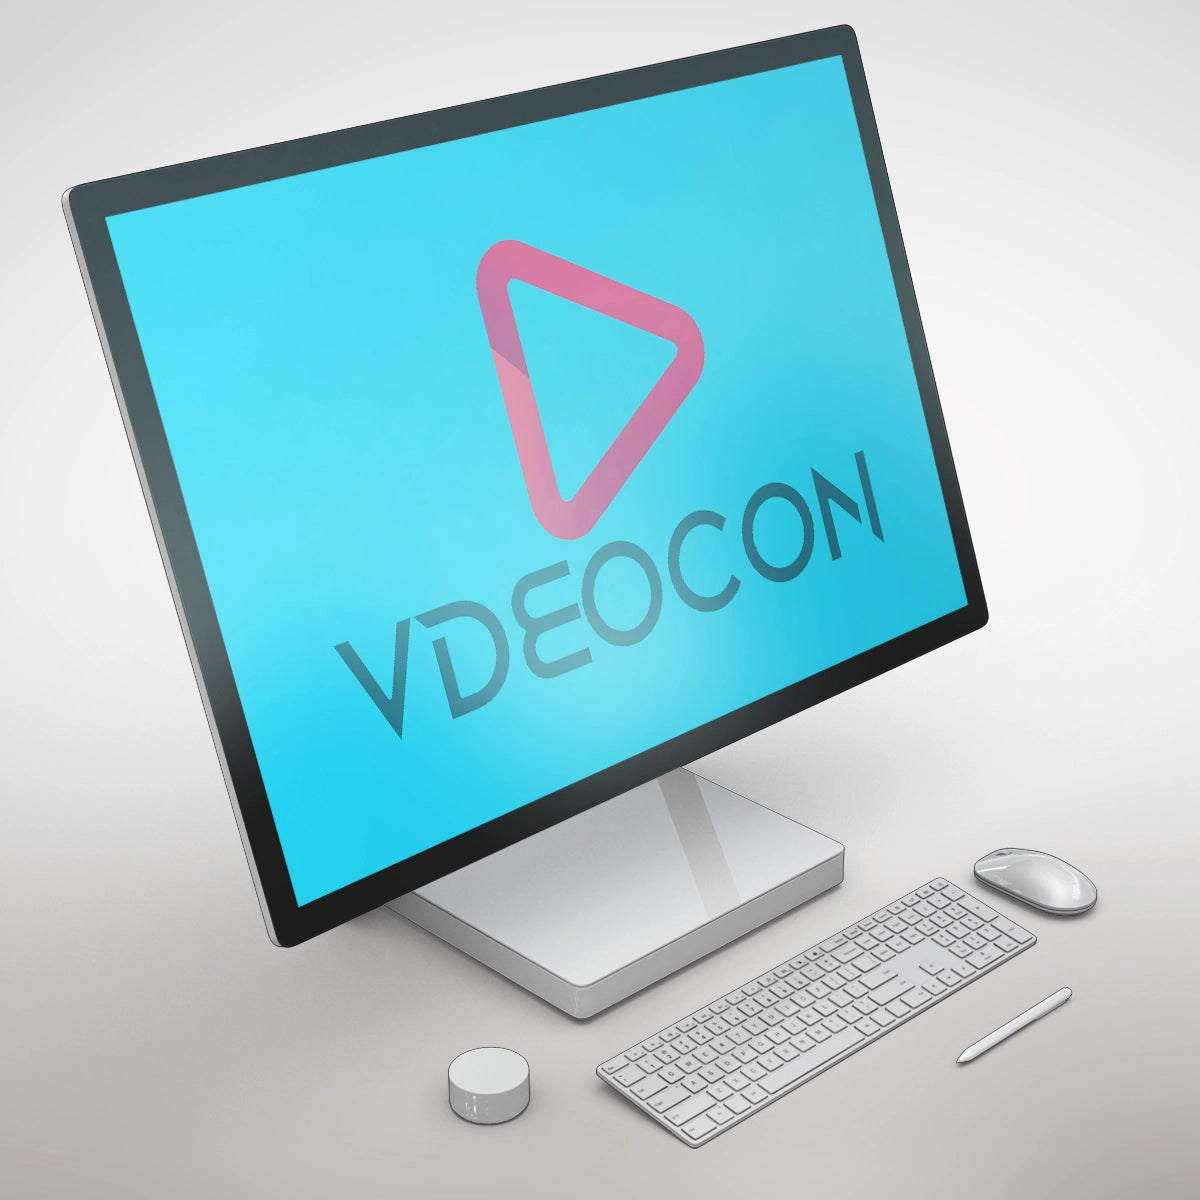 vdeocon.com